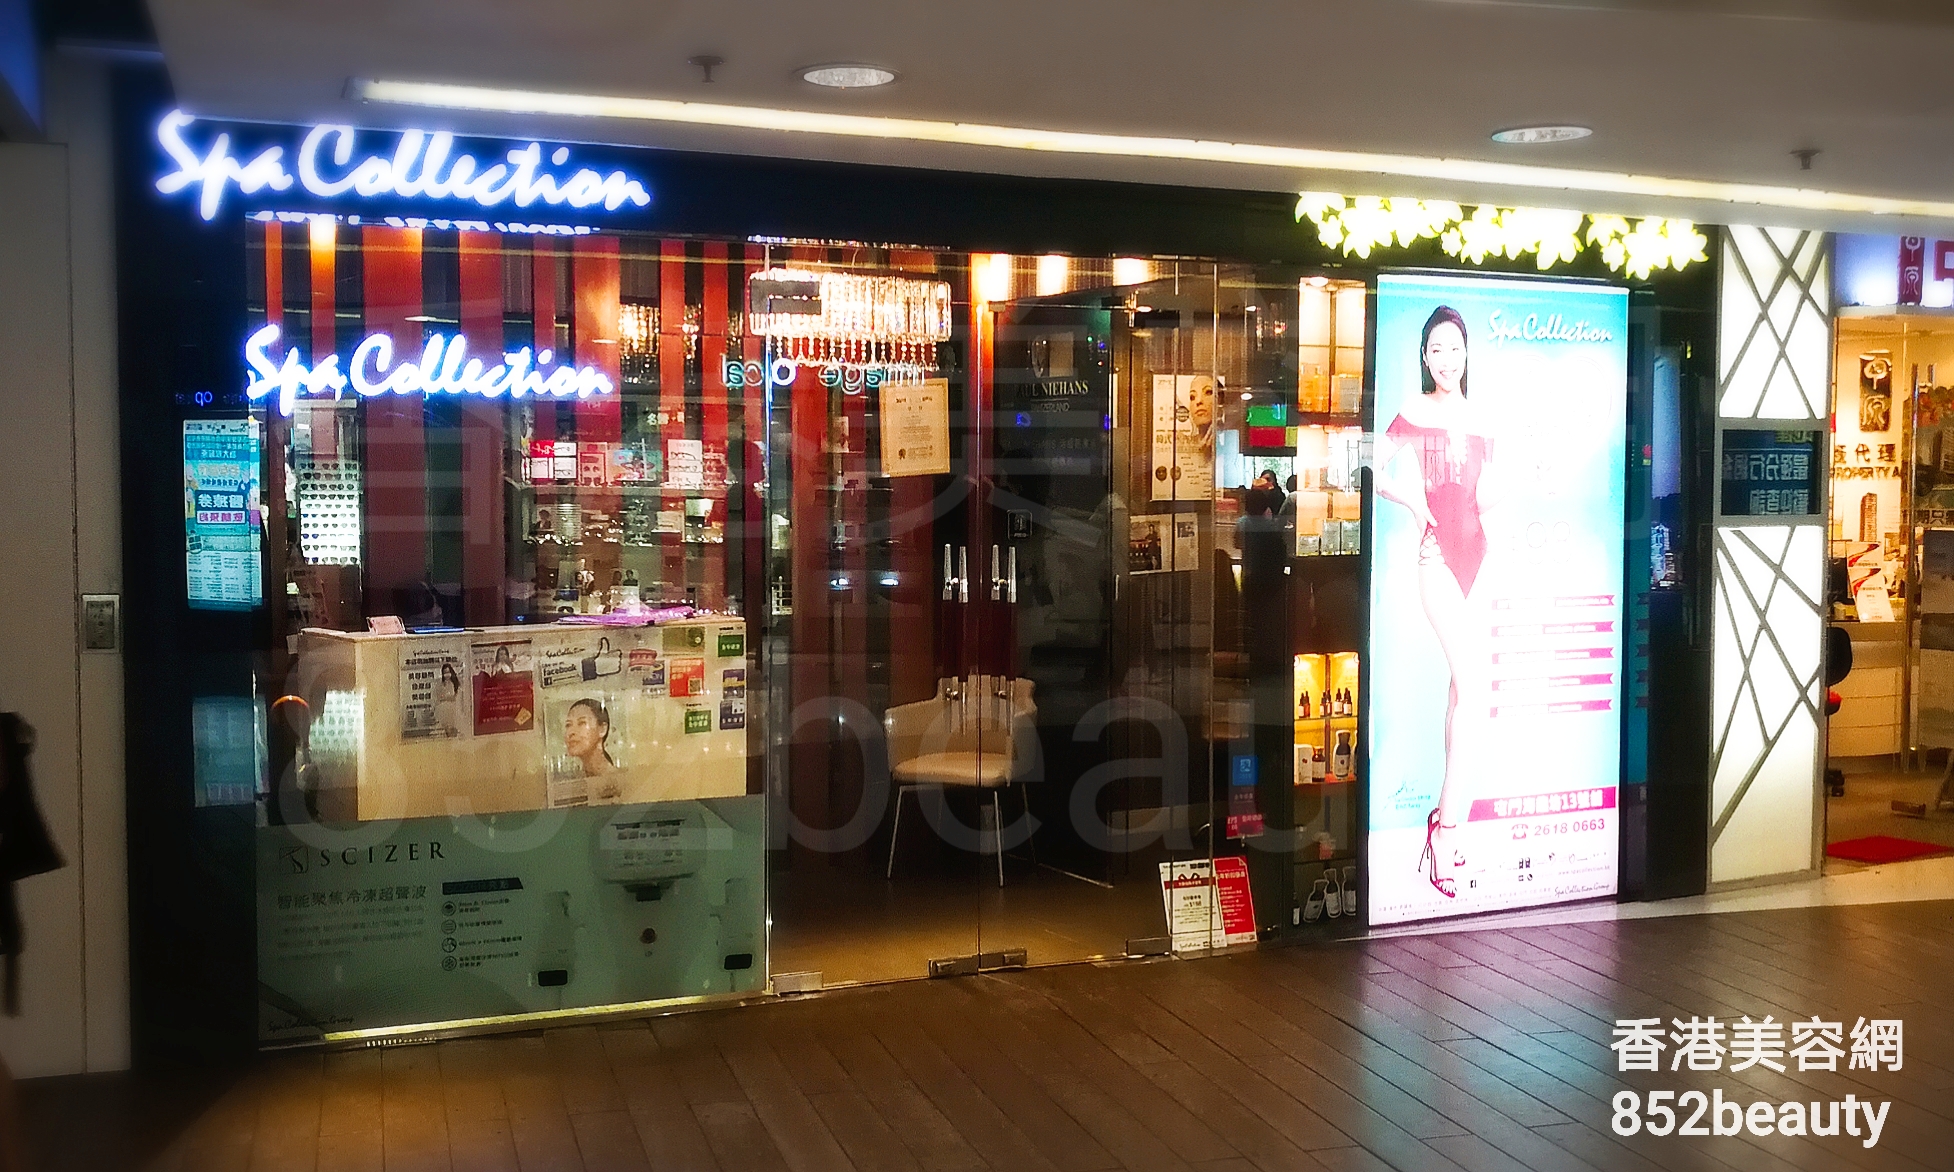 美容院 Beauty Salon 集团Spa Collection (屯門海趣坊店) @ 香港美容网 HK Beauty Salon